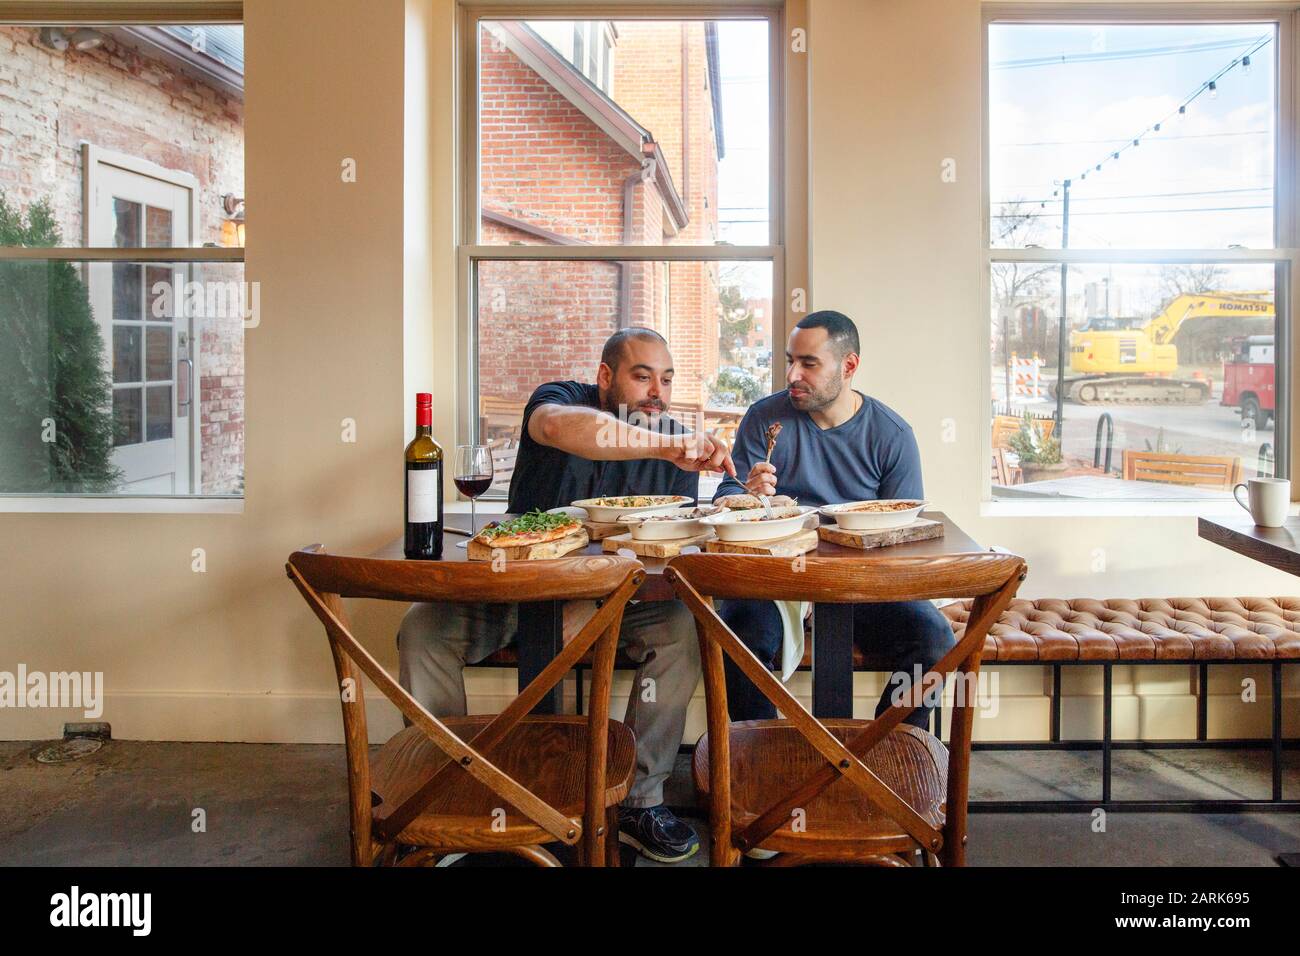 Deux hommes partagent un repas une bouteille de vin dans un restaurant vide Banque D'Images